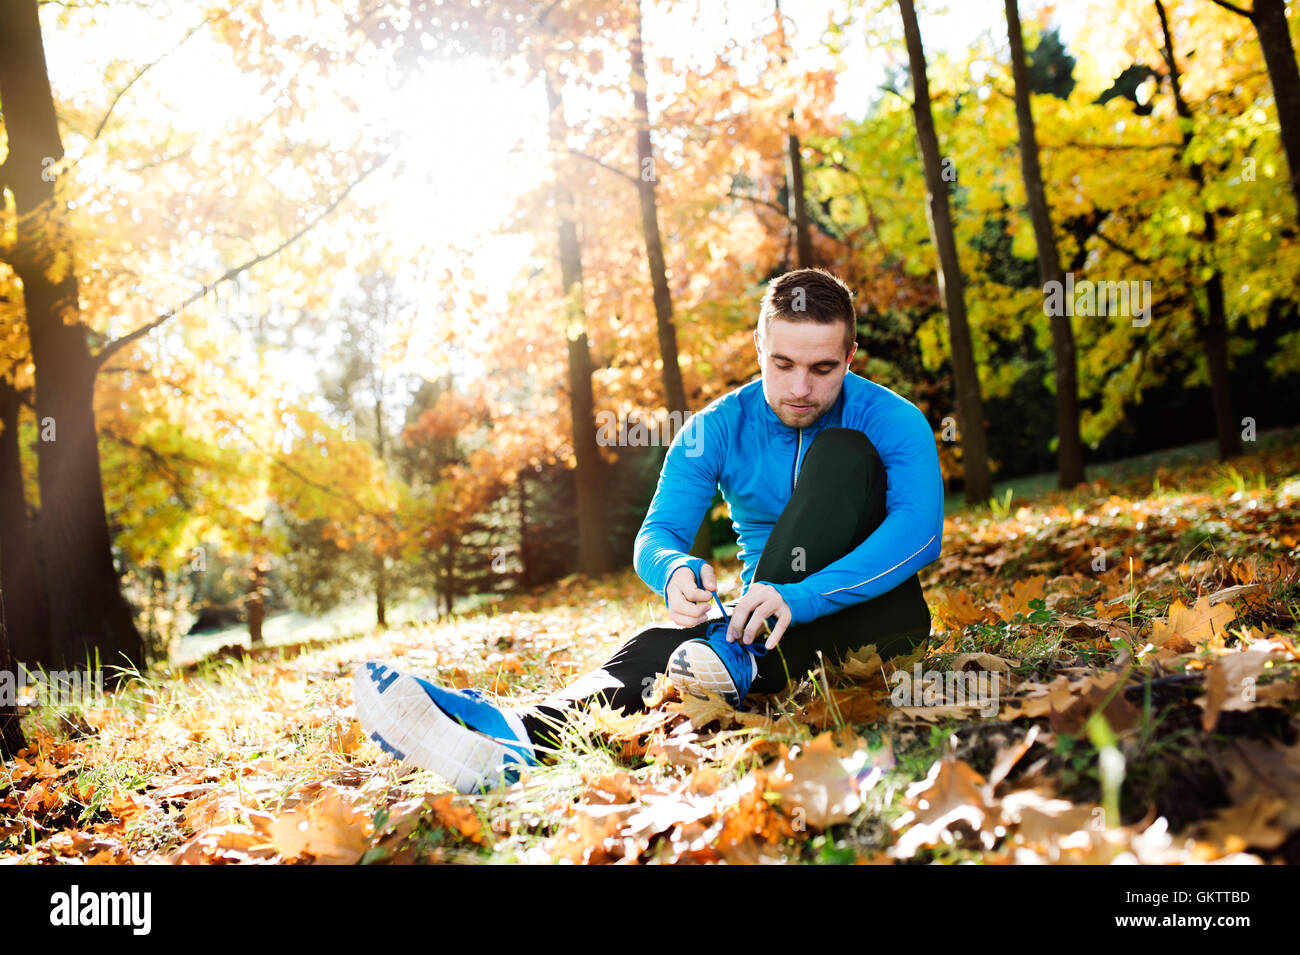 Läufer auf dem Boden sitzend binden der Schnürsenkel, Herbst Natur Stockfoto